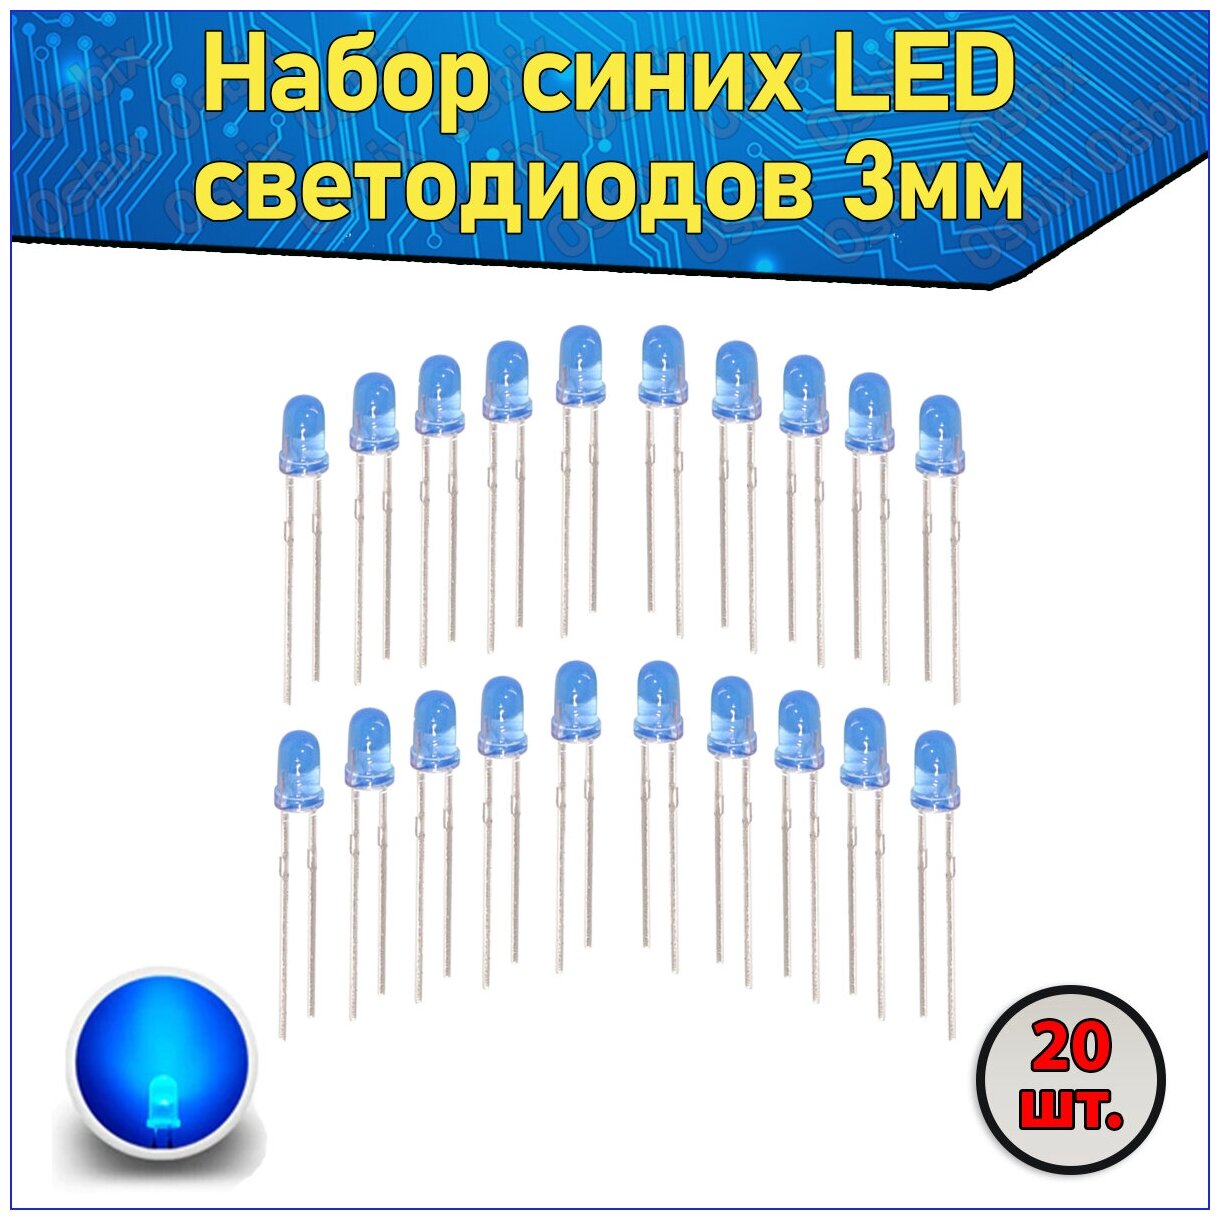 Набор синих LED светодиодов 3мм 20 шт. с короткими ножками & Комплект F3 LED diode